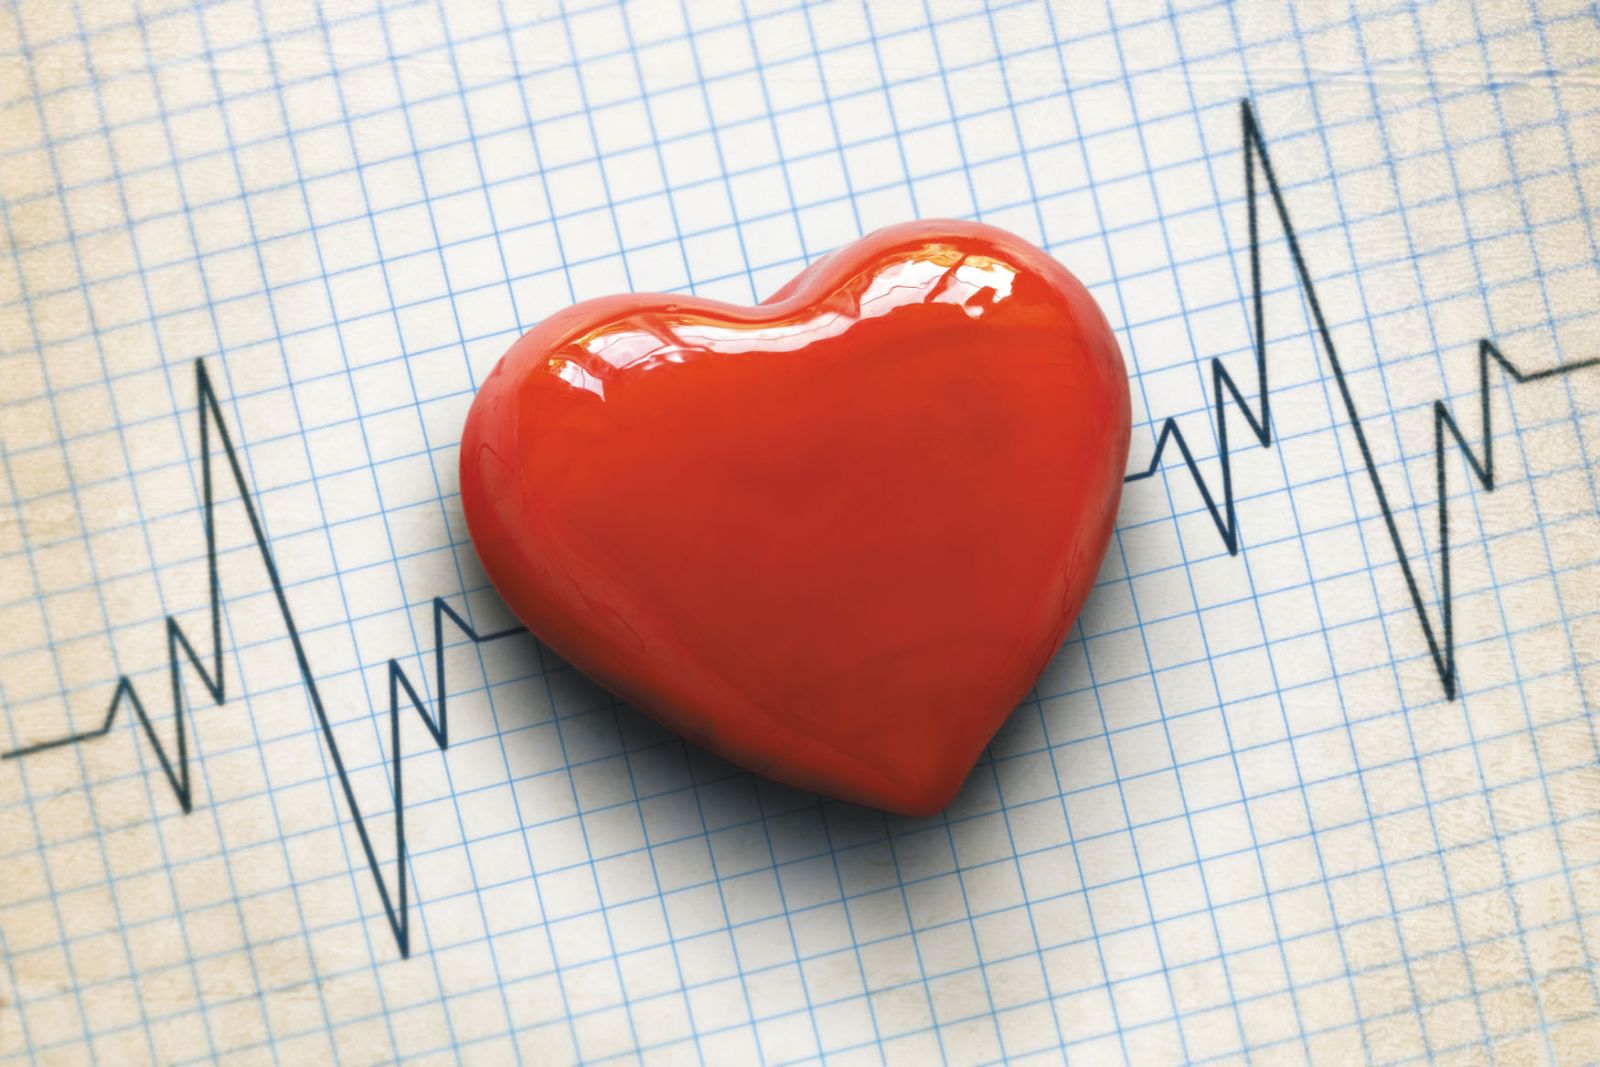 Heart Diseases – Cholesterol, Blood Pressure